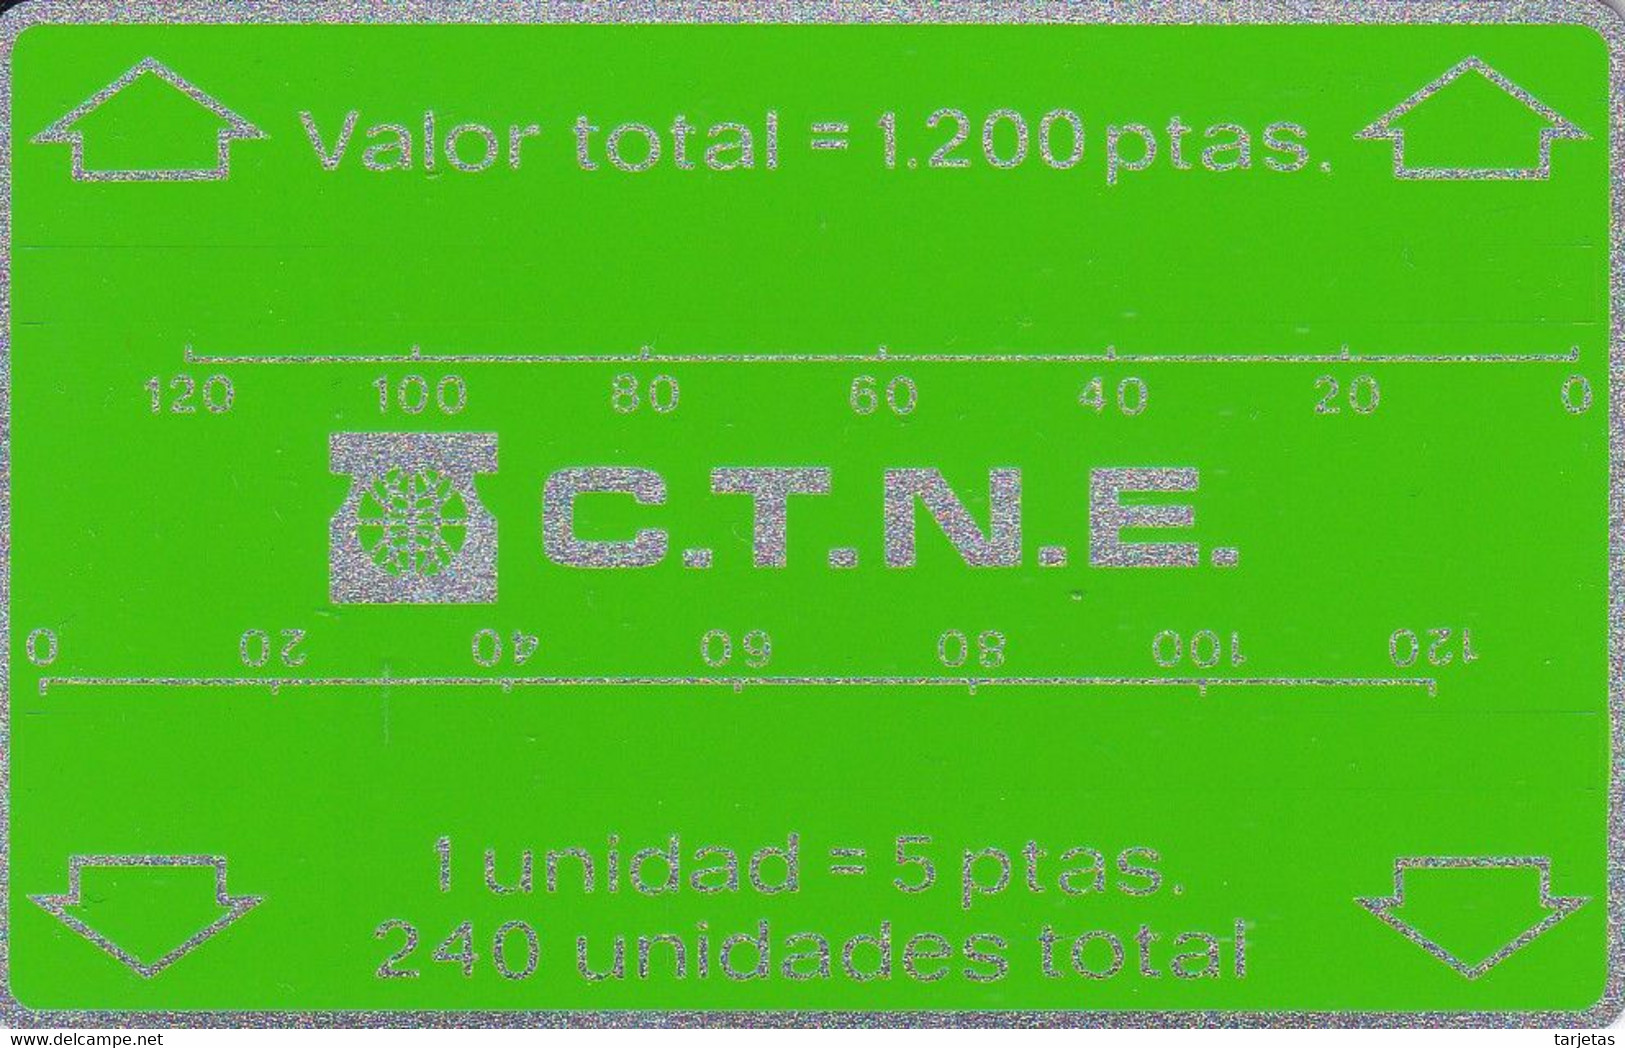 B-004  TARJETA DE ESPAÑA LANDIS &GYR BANDA OPTICA 1200 PTAS 11/83 TIRADA 1500 NUEVA-MINT - Opérateurs Télécom